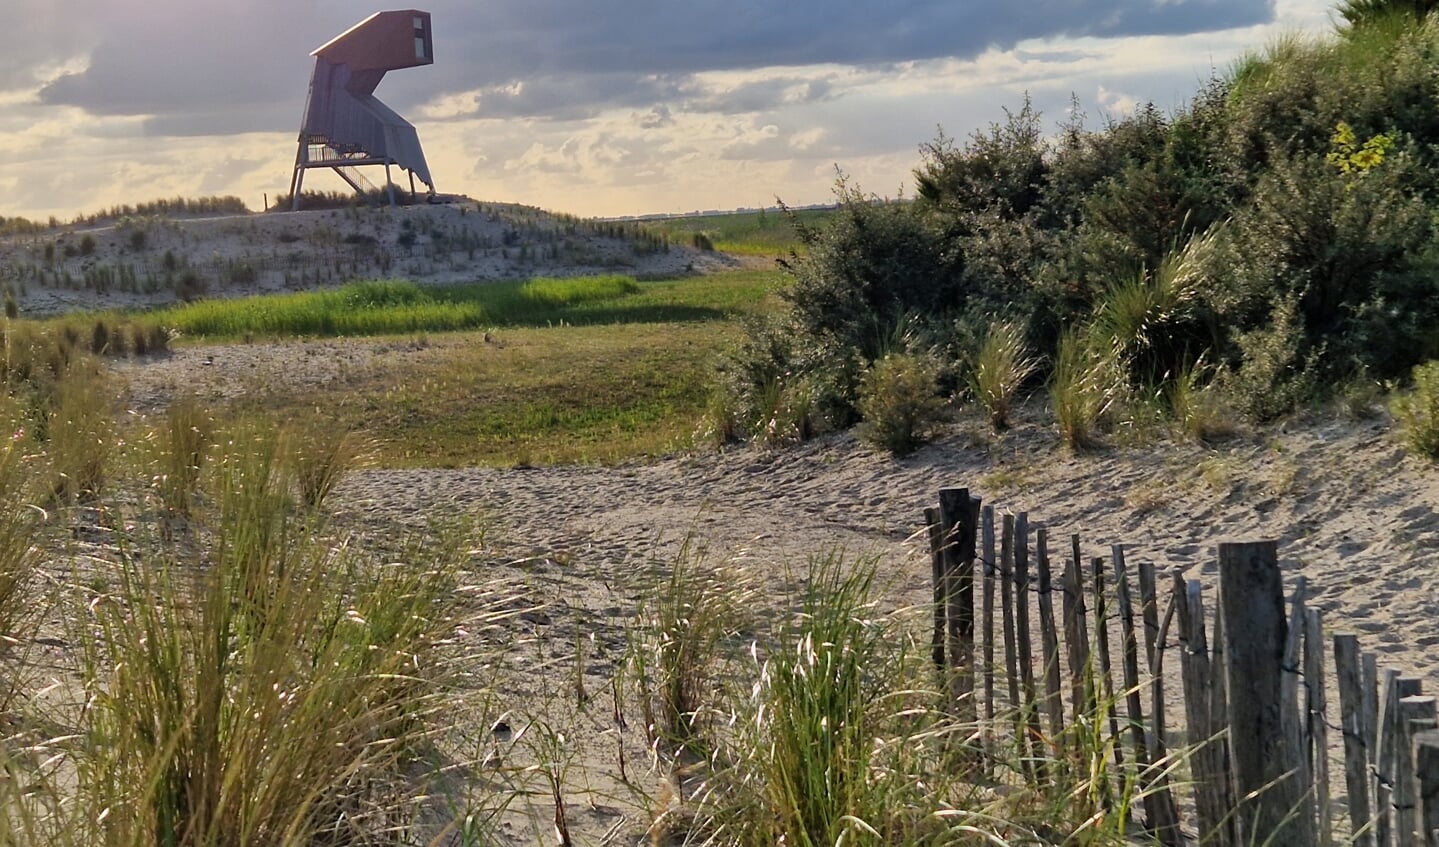 ,,De Marker Wadden 14 juli 2022. Een prachtig nieuw stukje Nederland in ontwikkeling. Op de foto de markante uitkijktoren Steltloper.
Wat een geweldige natuur; volop genieten van vakantie in Nederland!